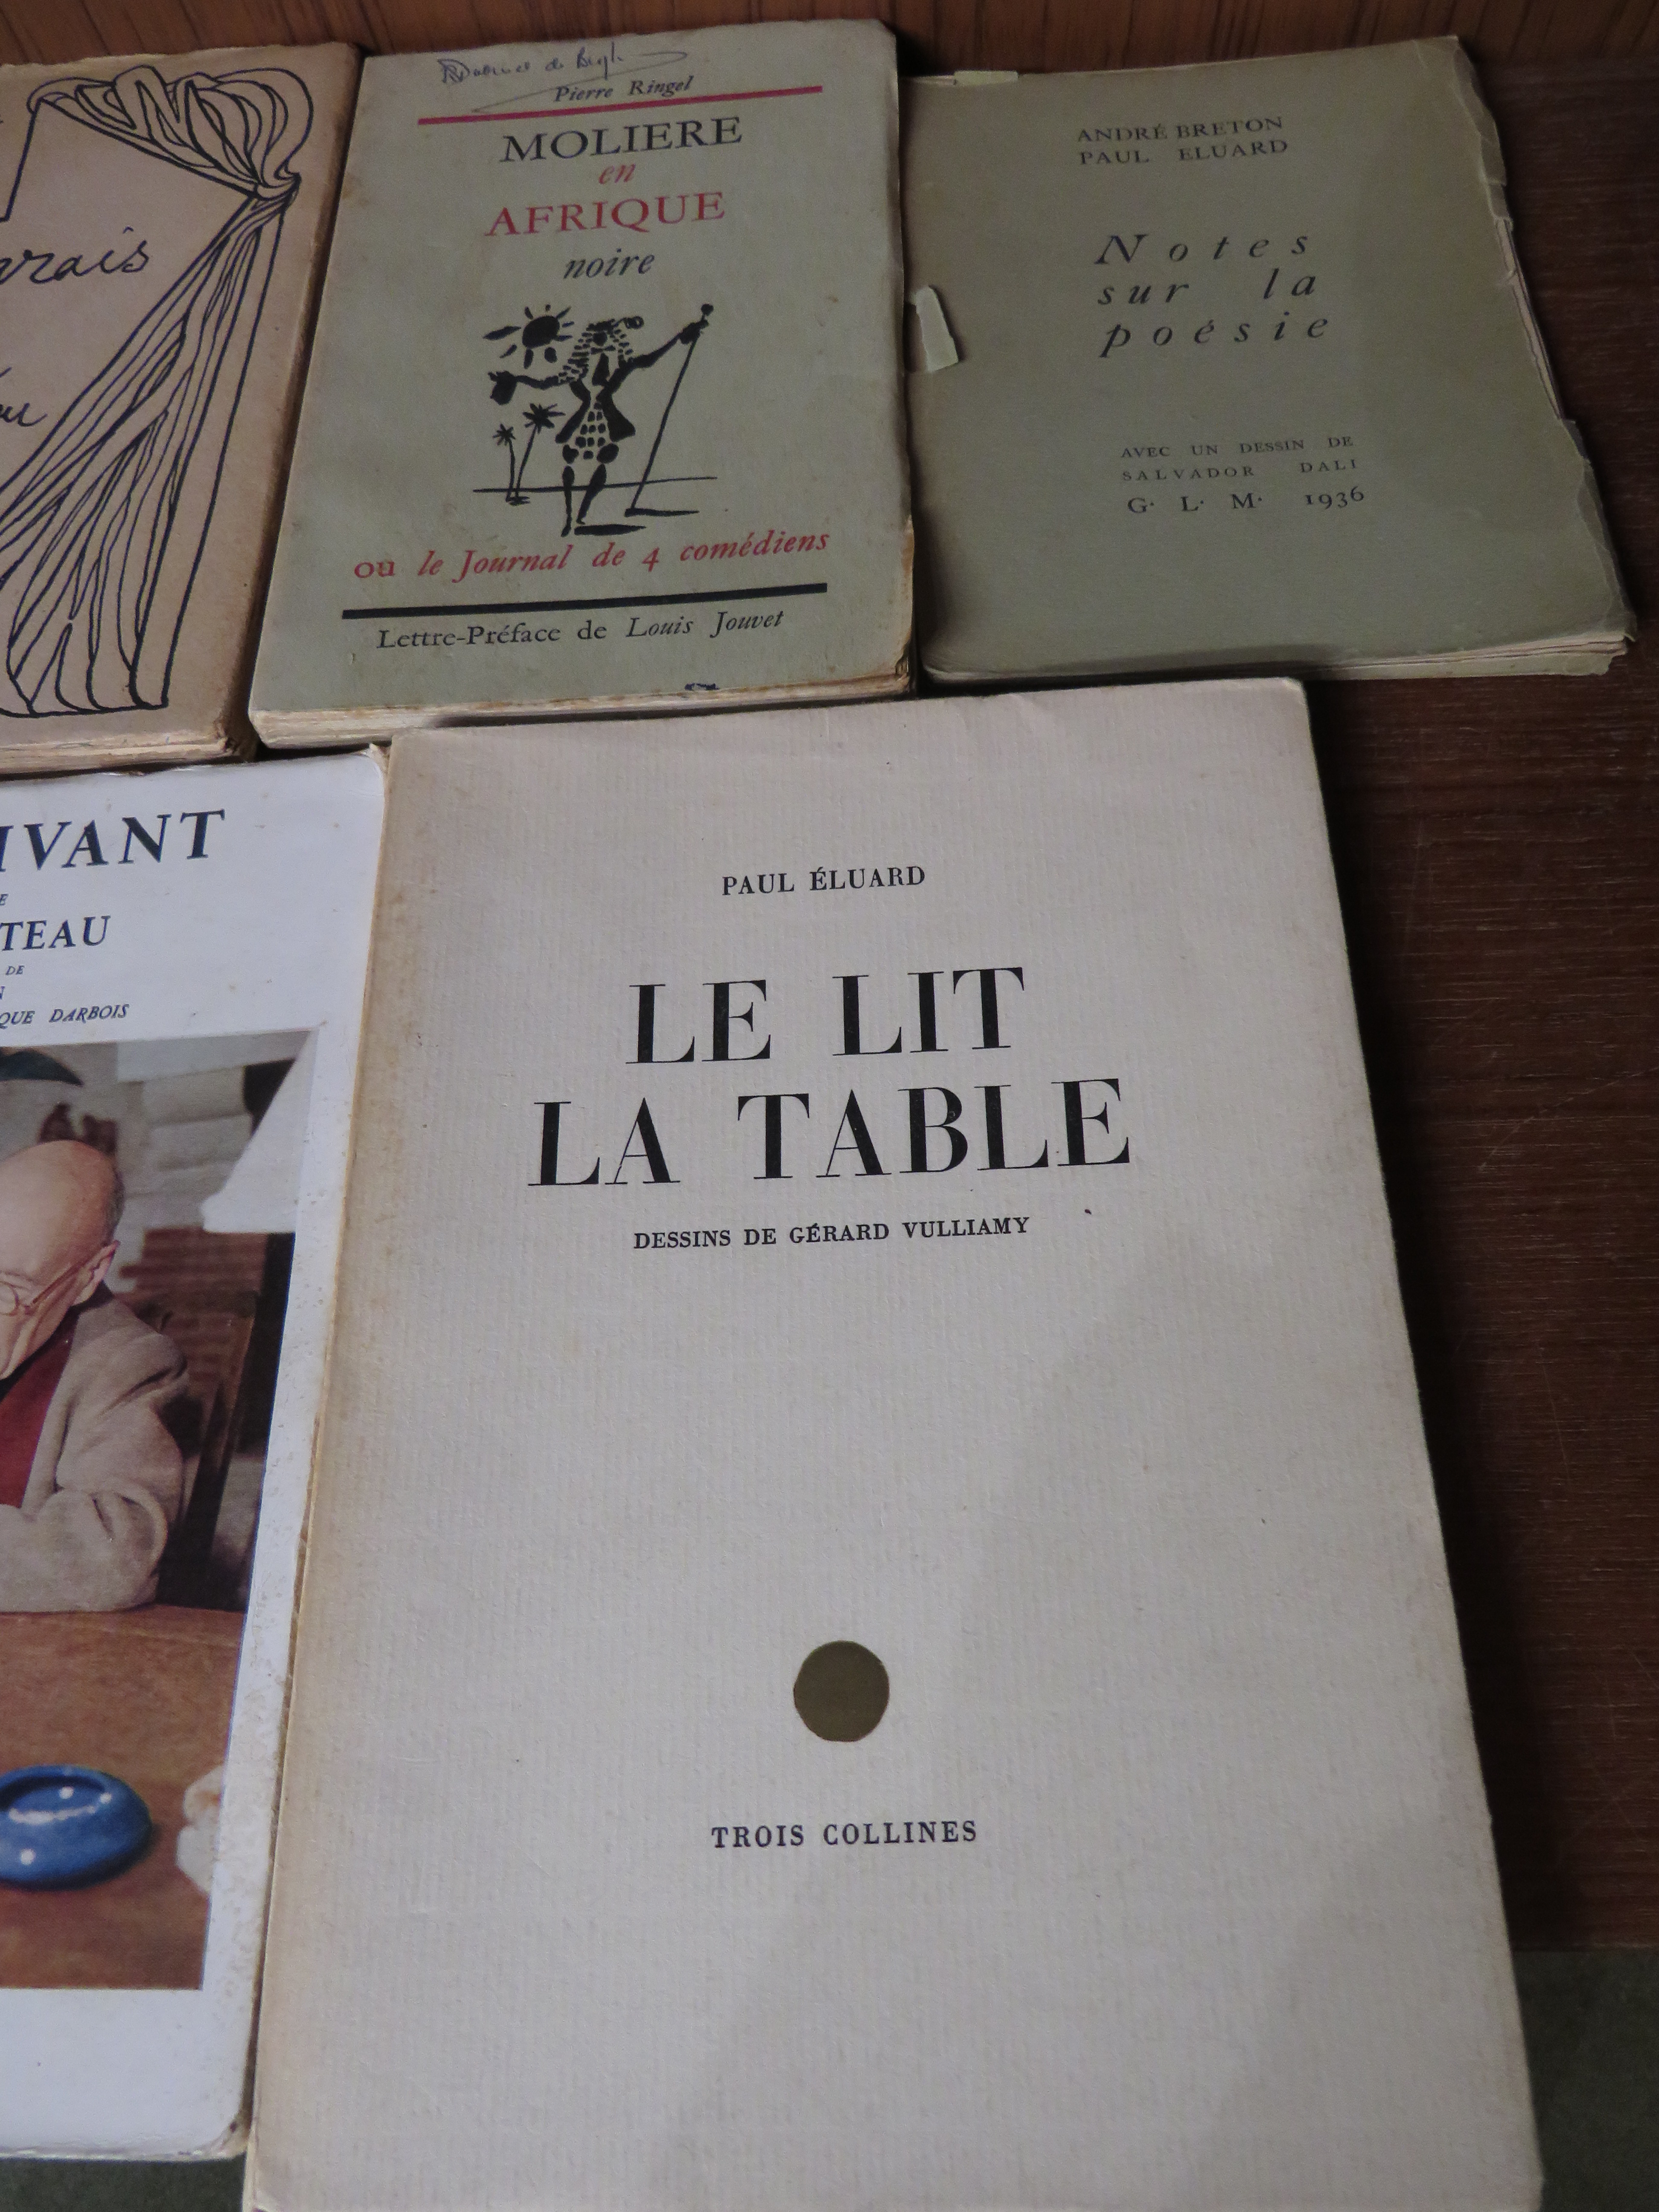 Paul Eluard - Le Lit la Table, dessins de Gerrard Vulliamy, Trois Collines, 1946, numbered 753; - Image 4 of 4